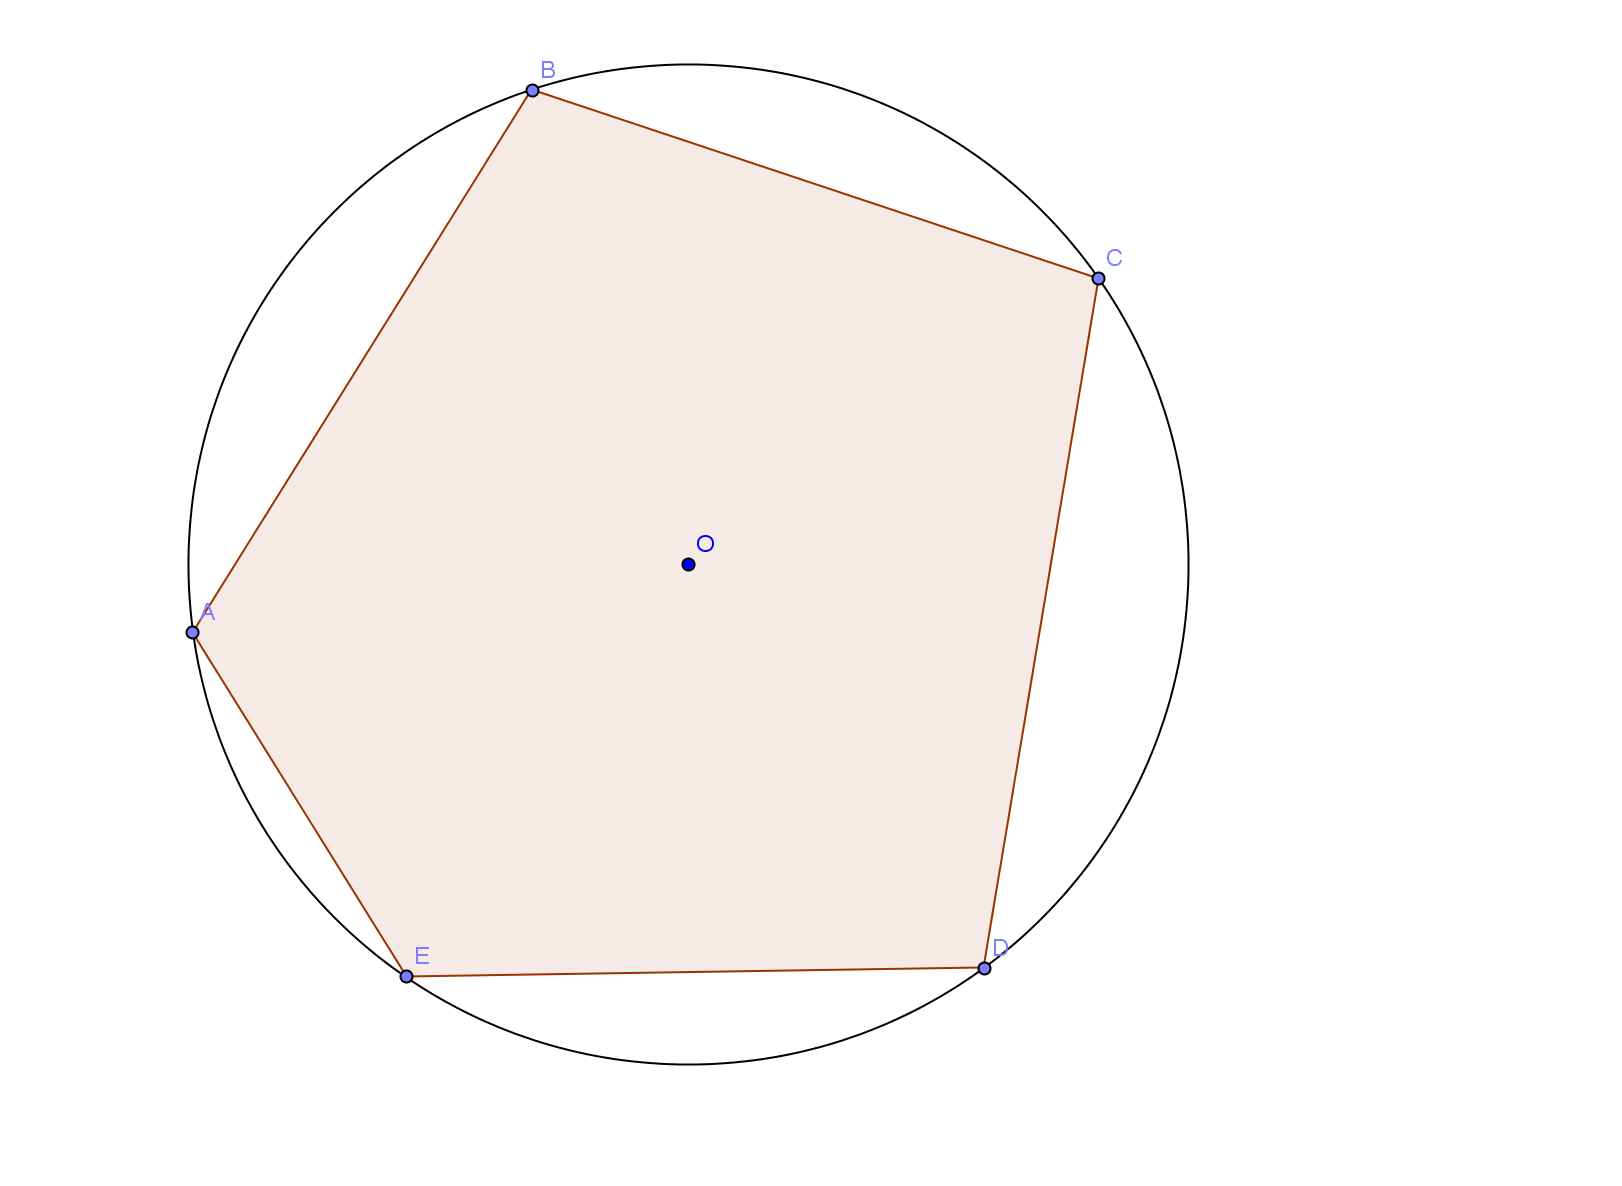 ue circonferenze sono dette interne se non hanno punti di intersezione e il centro di una è un punto interno all altra. Fig. 7.30 irconferenze interne.